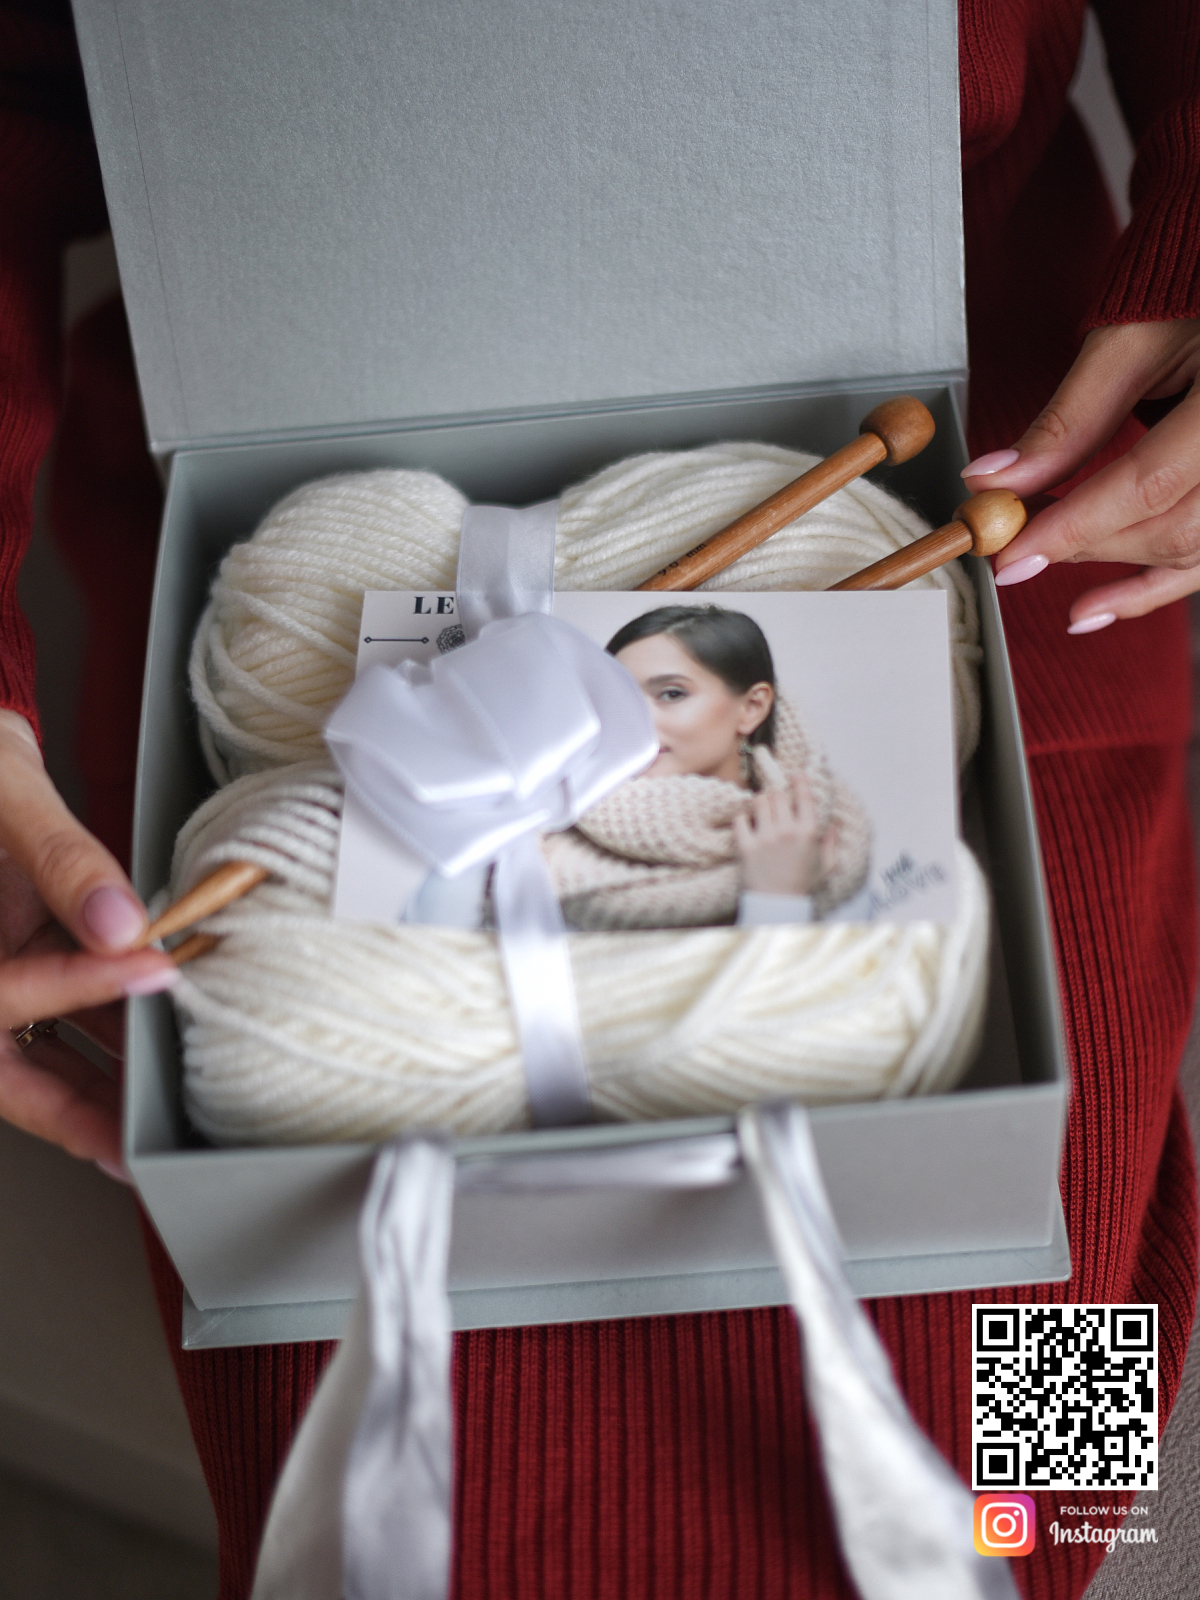 На второй фотографии подарочный набор для вязания черного шарфа изнутри в интернет-магазине Shapar, бренда трикотажа и связанной одежды ручной работы.